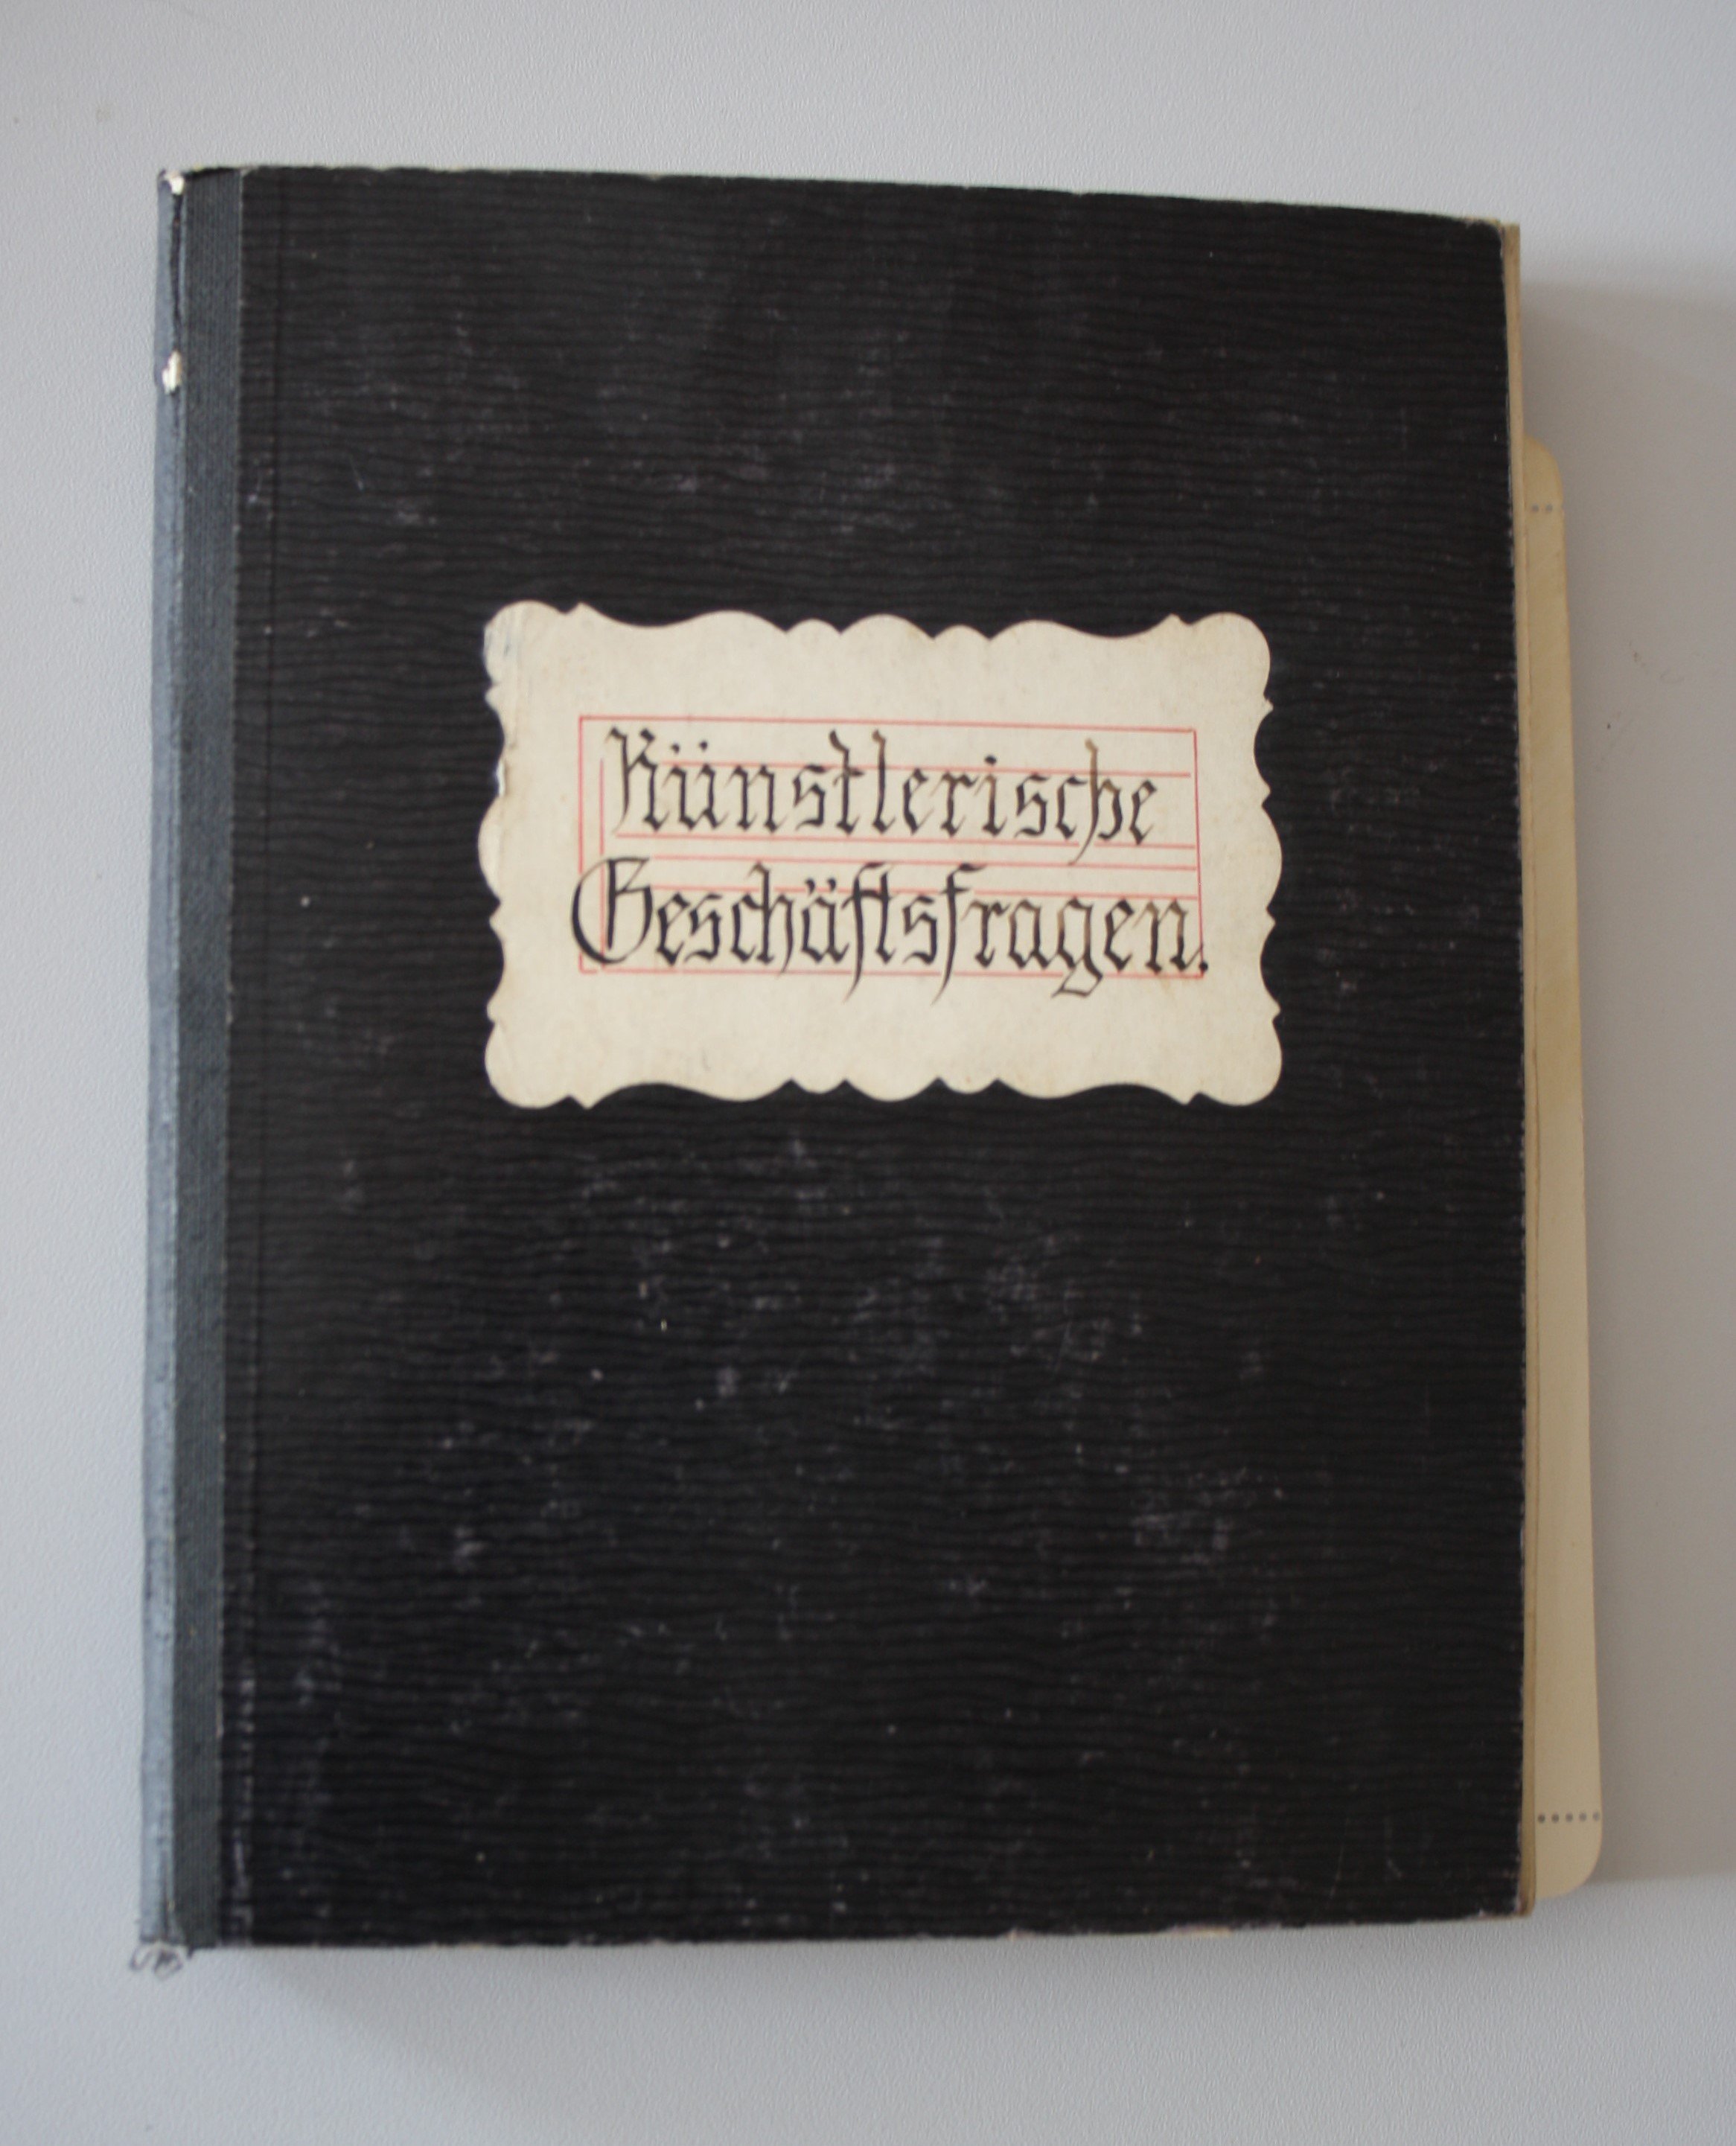 Notizbuch "Künstlerische Geschäftsfragen" von Carl Scheel (Spohr Museum CC BY-NC-SA)